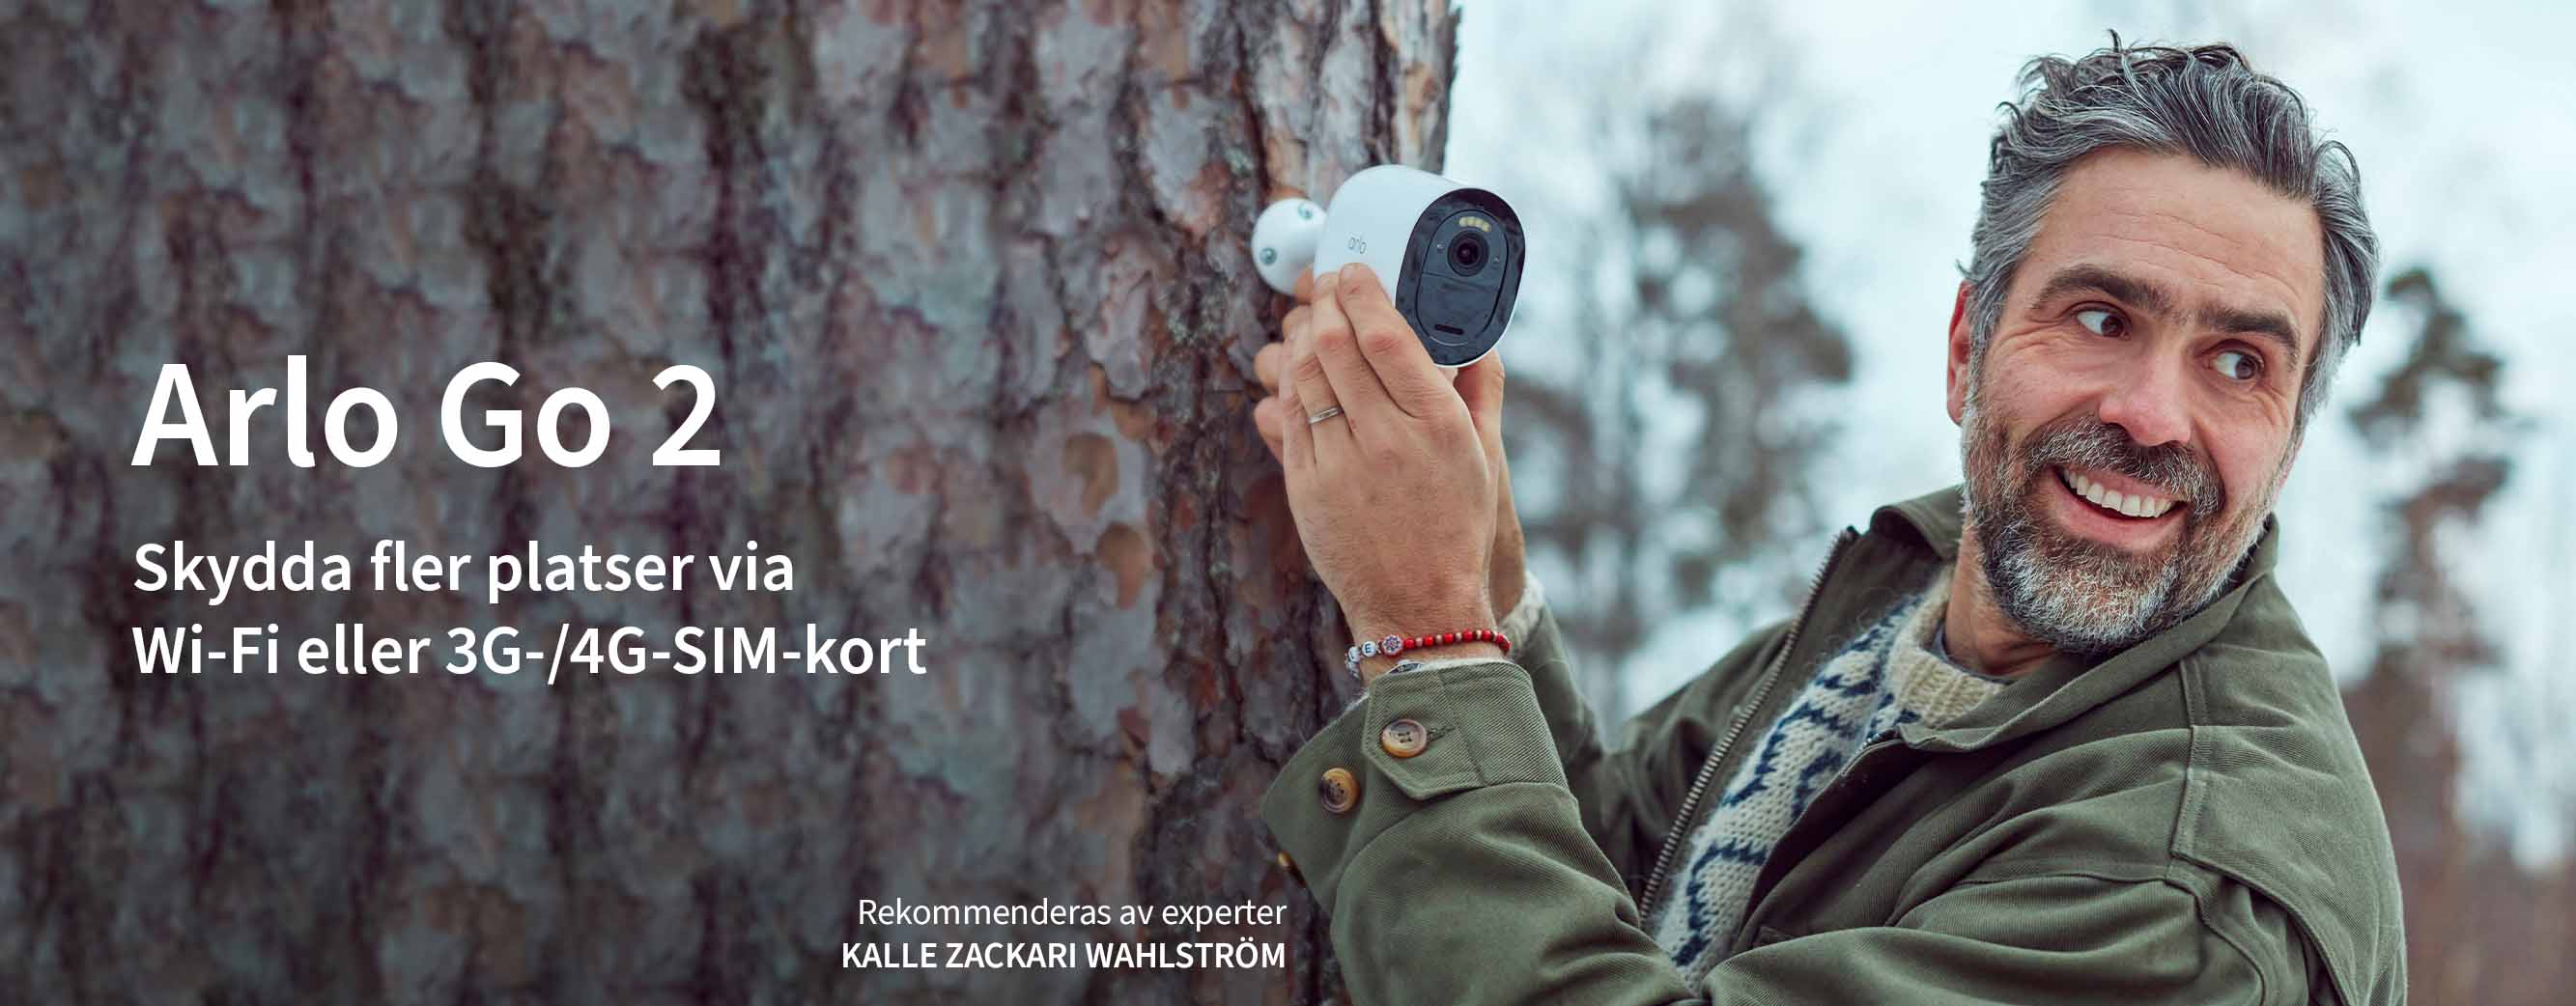 TV-Programledaren Kalle Zackari Wahlström  installerar Arlo Go 2 säkerhetskameran mot en vägg